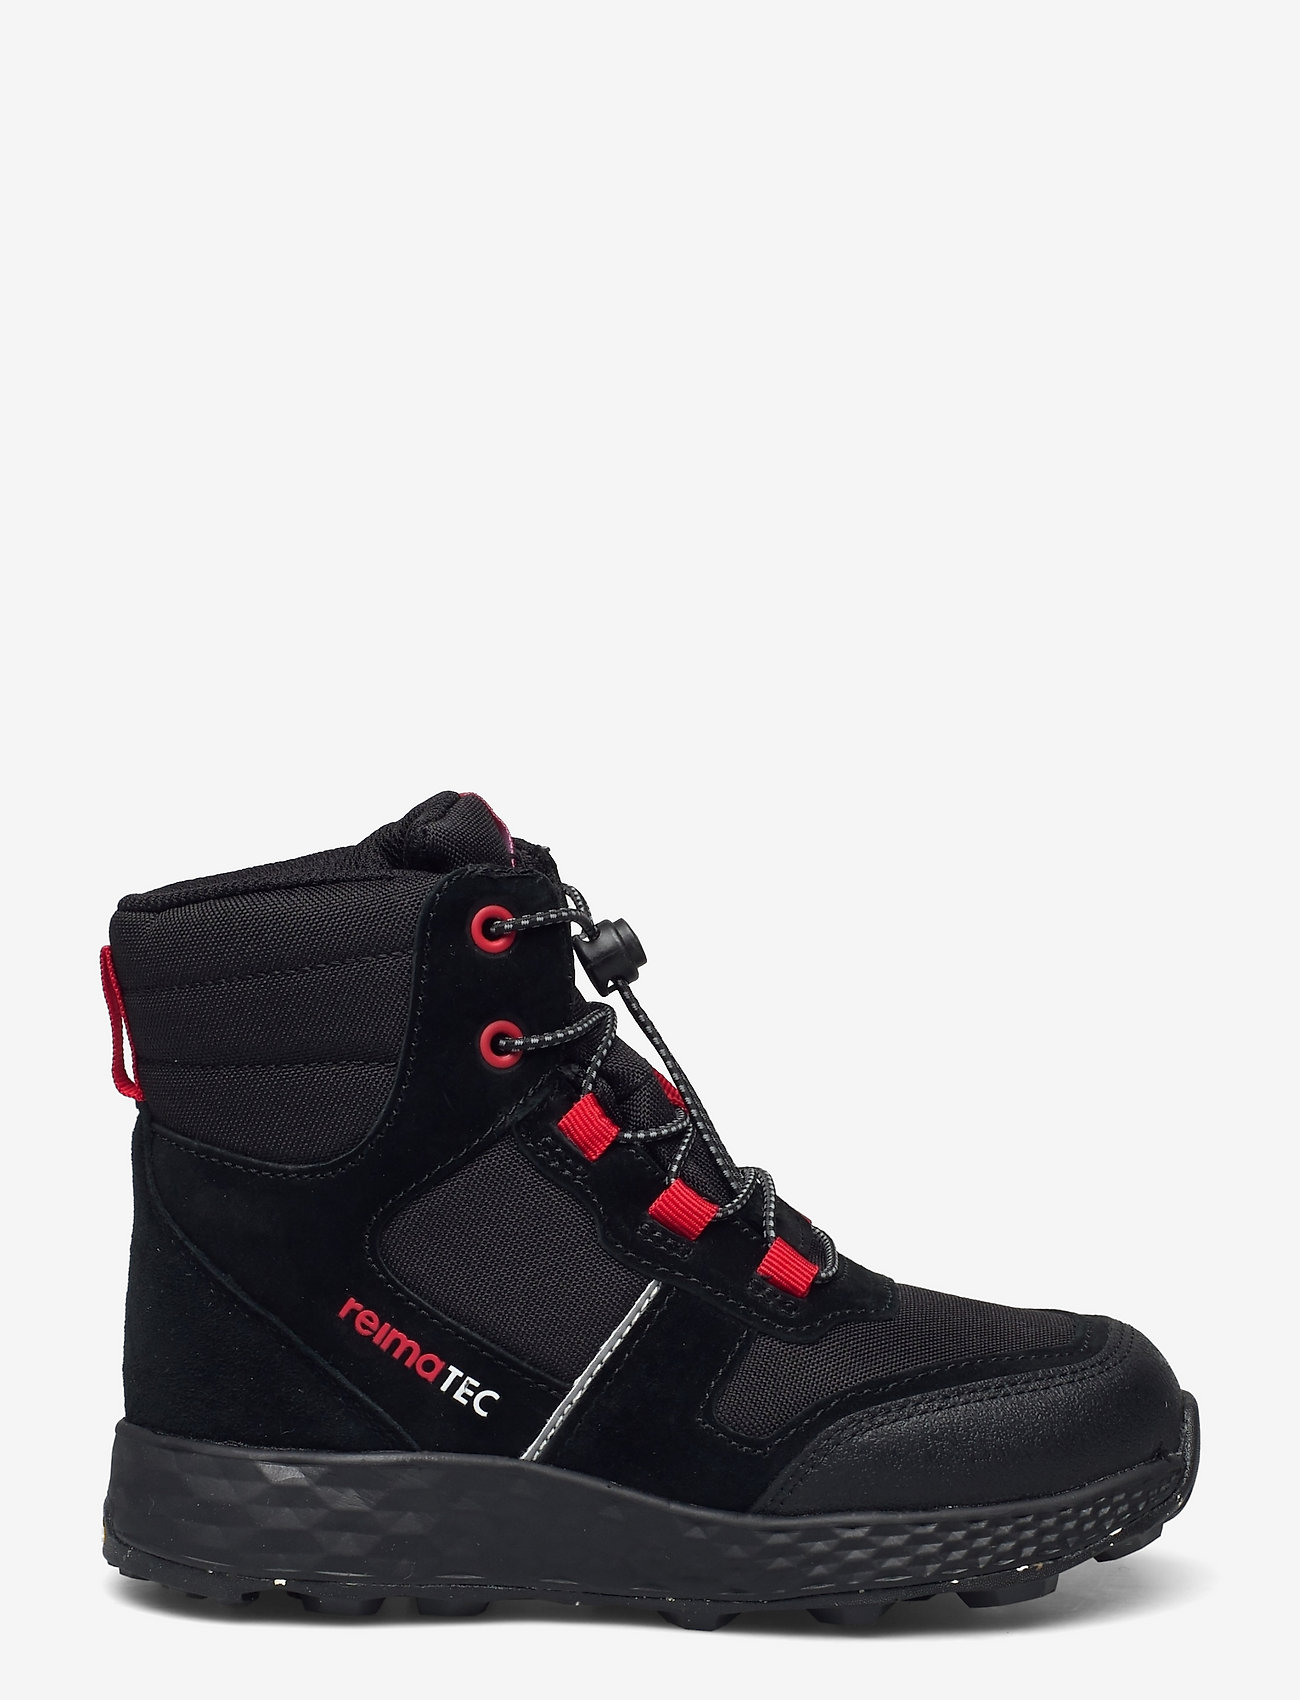 Reima - Reimatec shoes, Ehtii - chaussures - black - 1